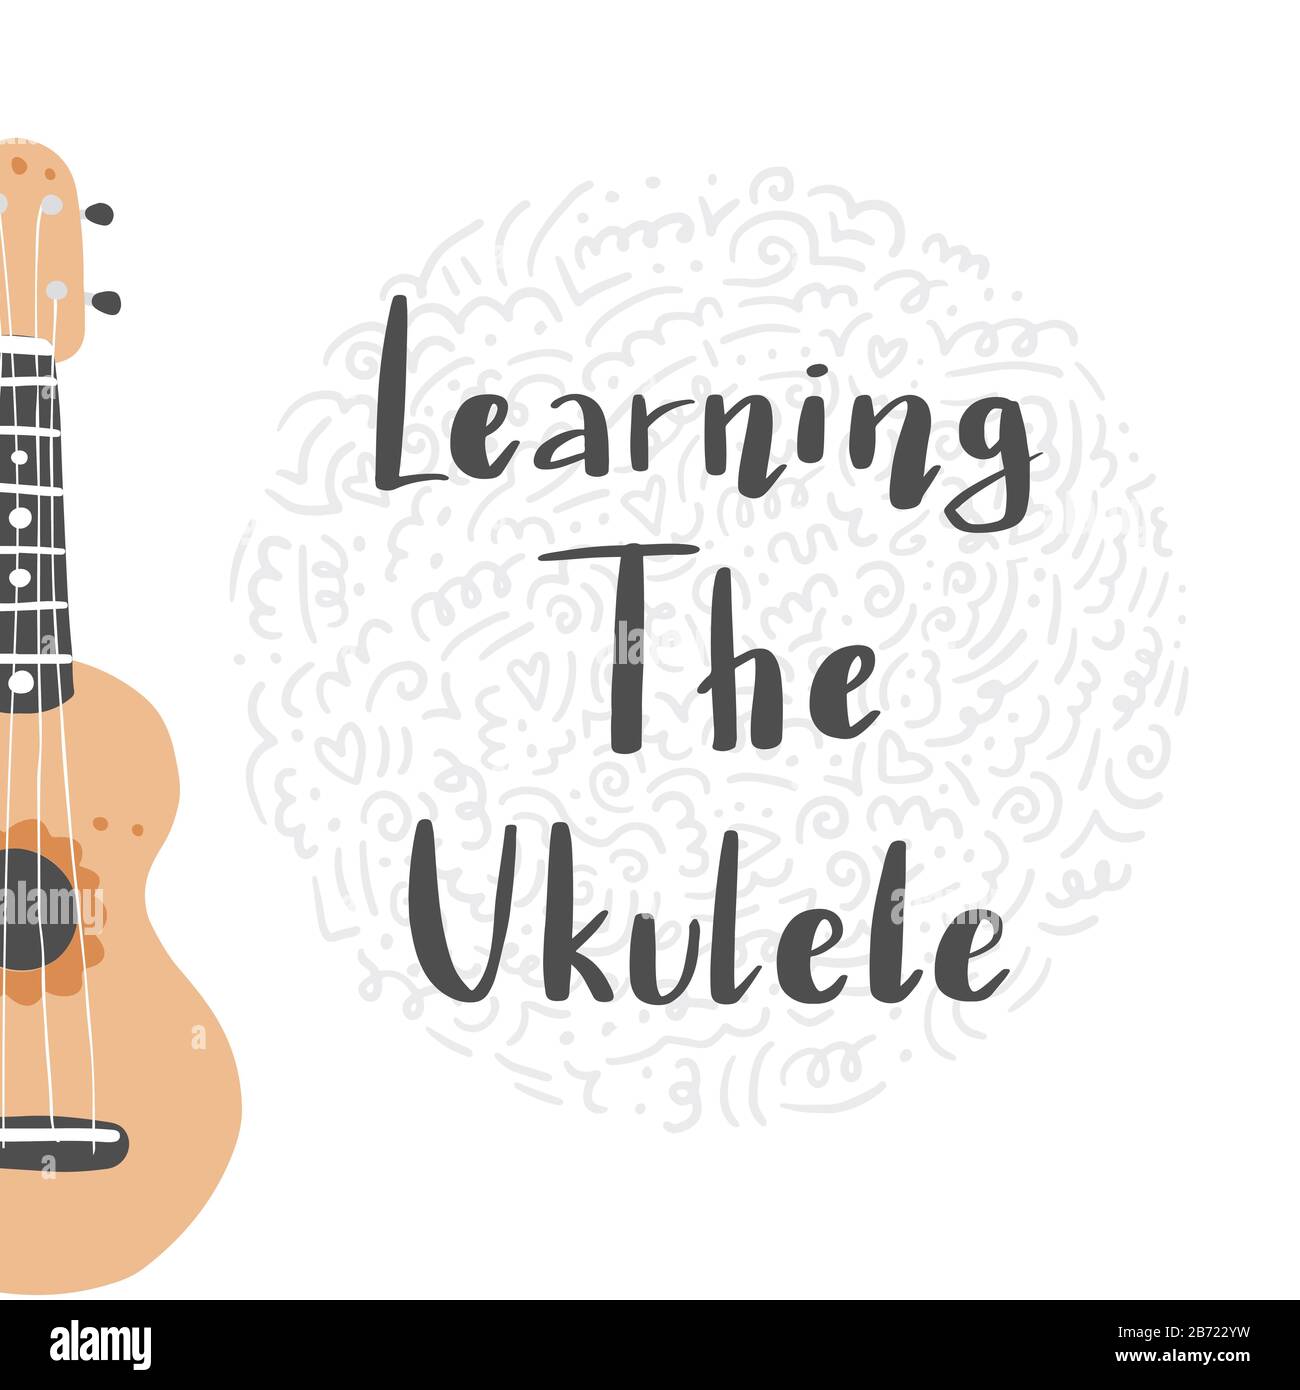 Bande dessinée ukulele avec texte lettrage pour le cours ukulele, canal, logo design. Petite guitare de style hawaï. Illuataration vectorielle du style dessiné à la main. Illustration de Vecteur